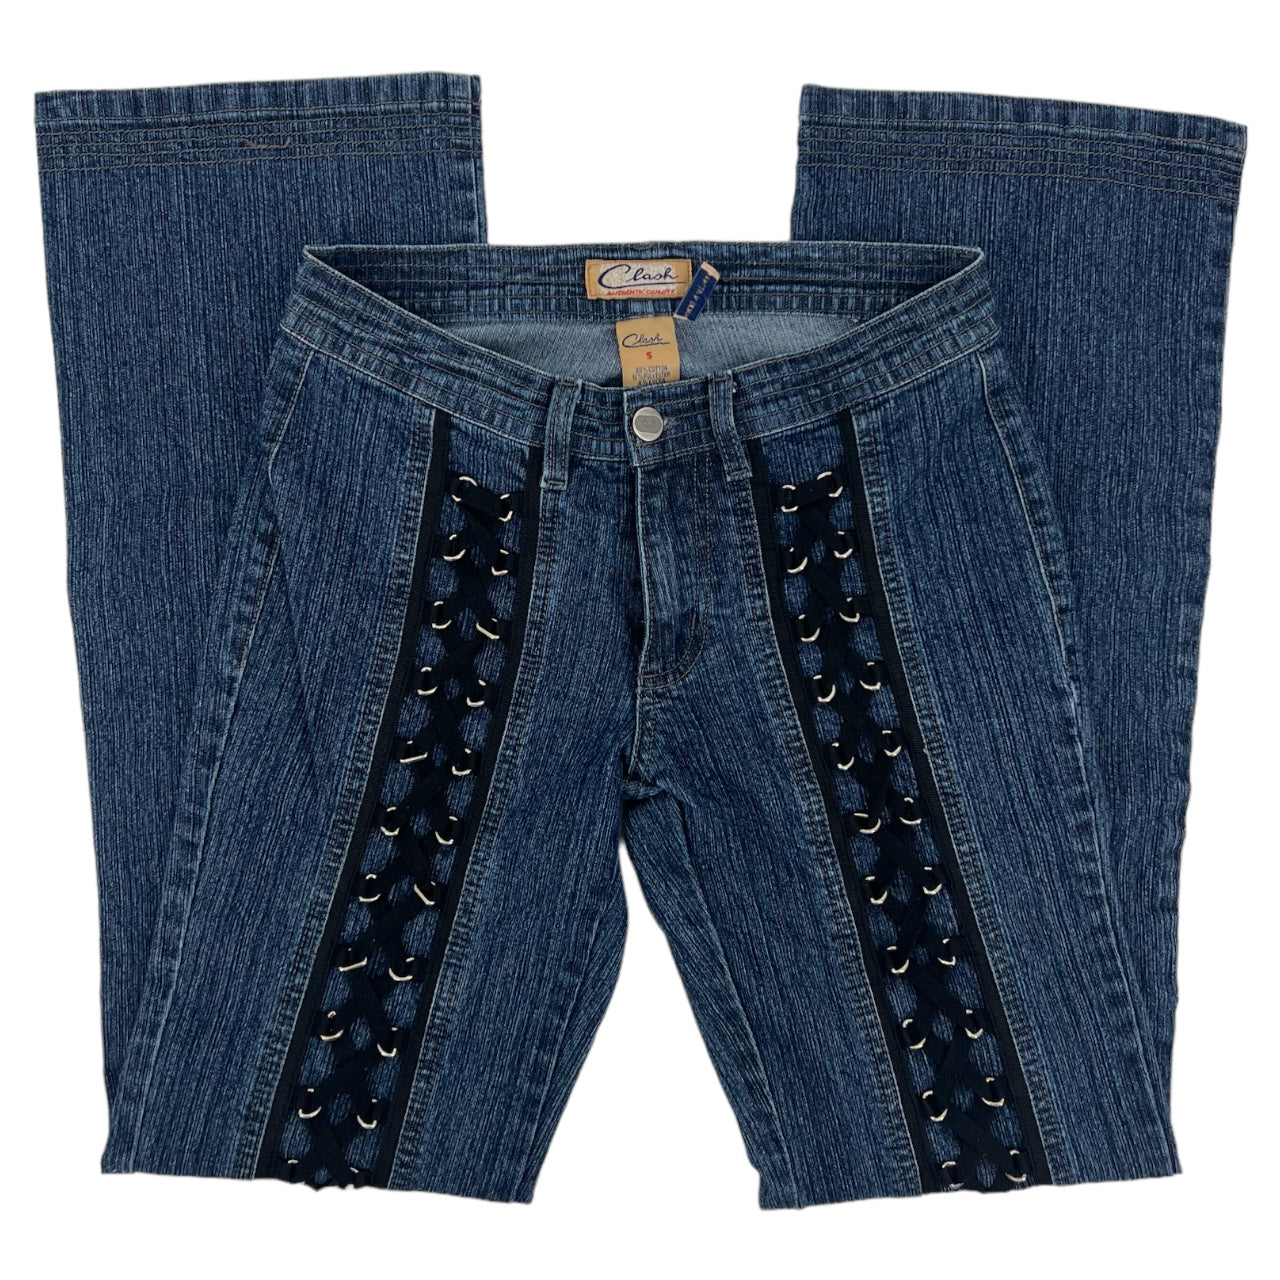 Vintage 90s Y2K Clash Lace Up Grunge Bootcut Jeans Sz: 5